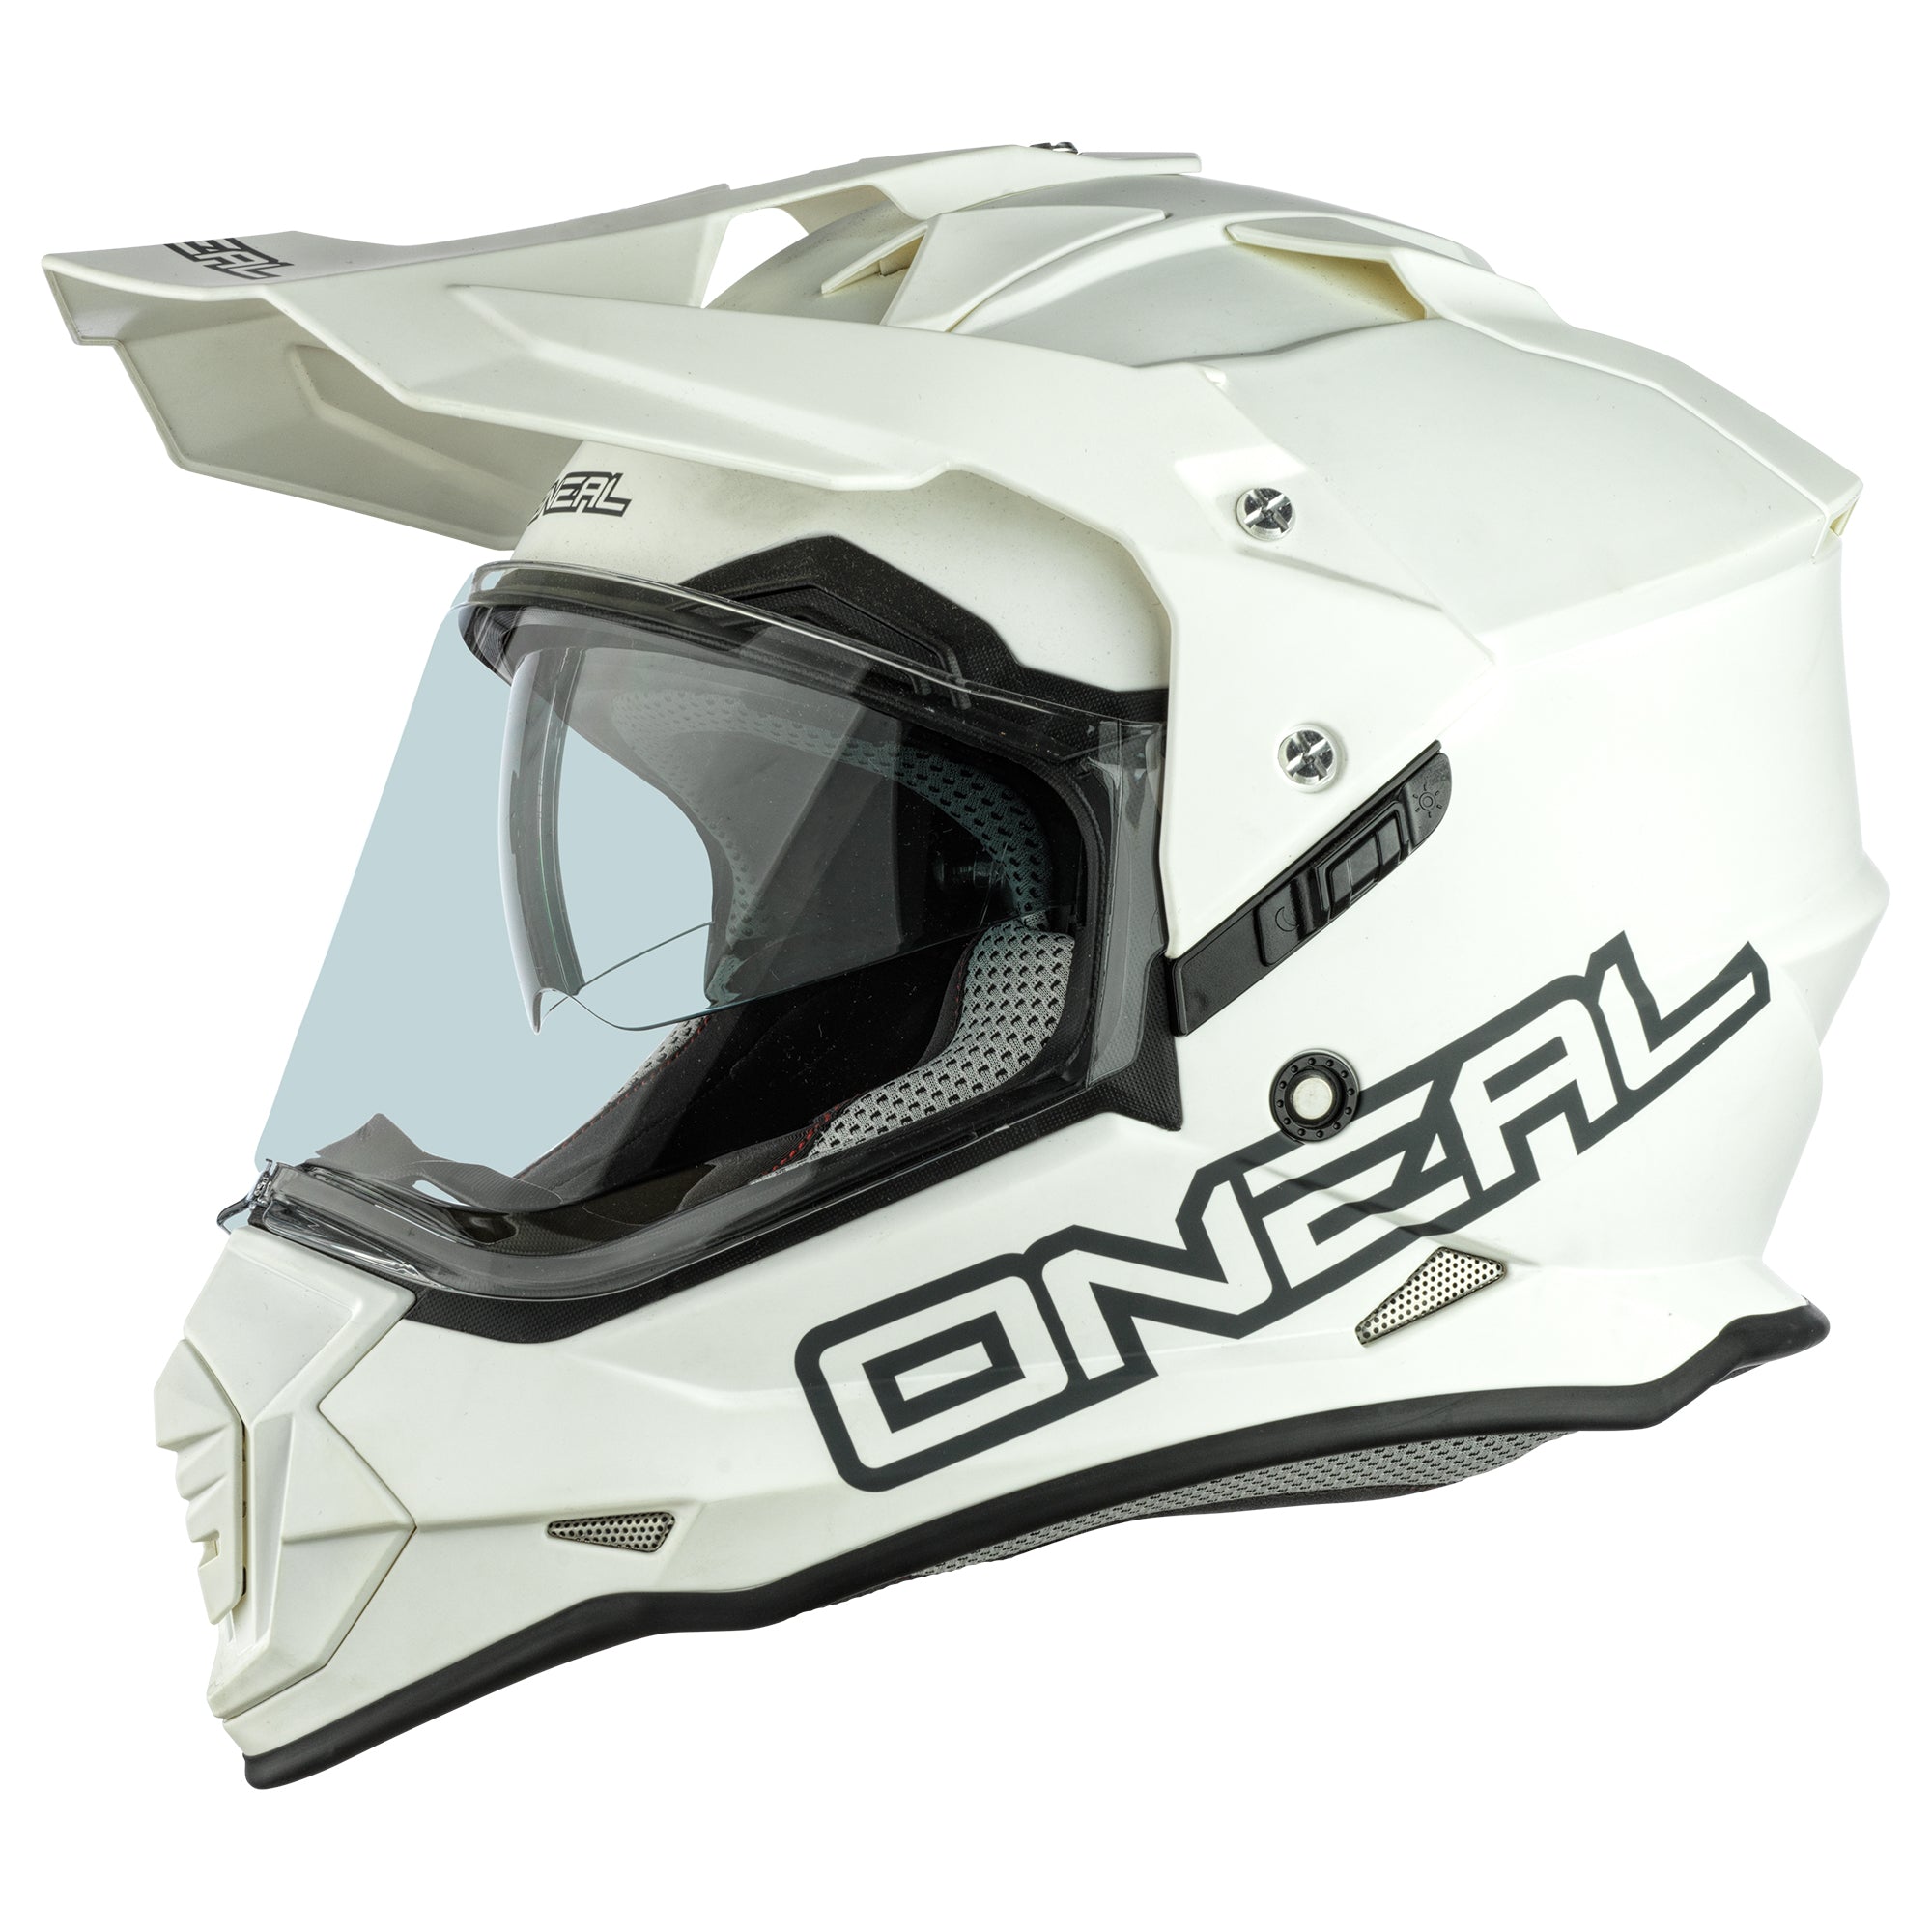 O’Neal Sierra II helmet image